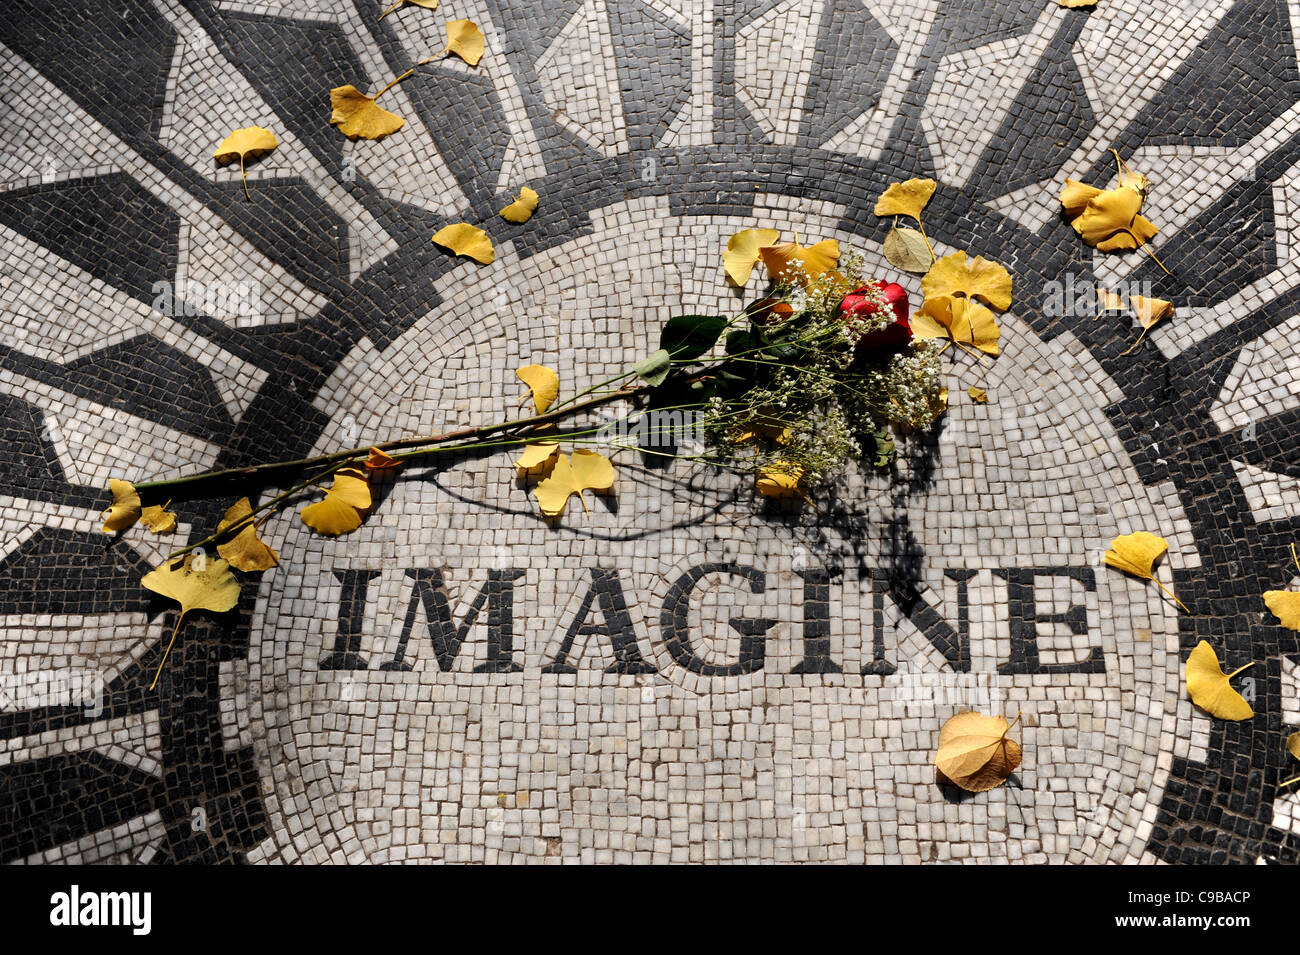 La Immaginate di mosaico con rosa rossa a Strawberry Fields memorial sito per John Lennon Central Park Manhattan New York New York STATI UNITI D'AMERICA Foto Stock